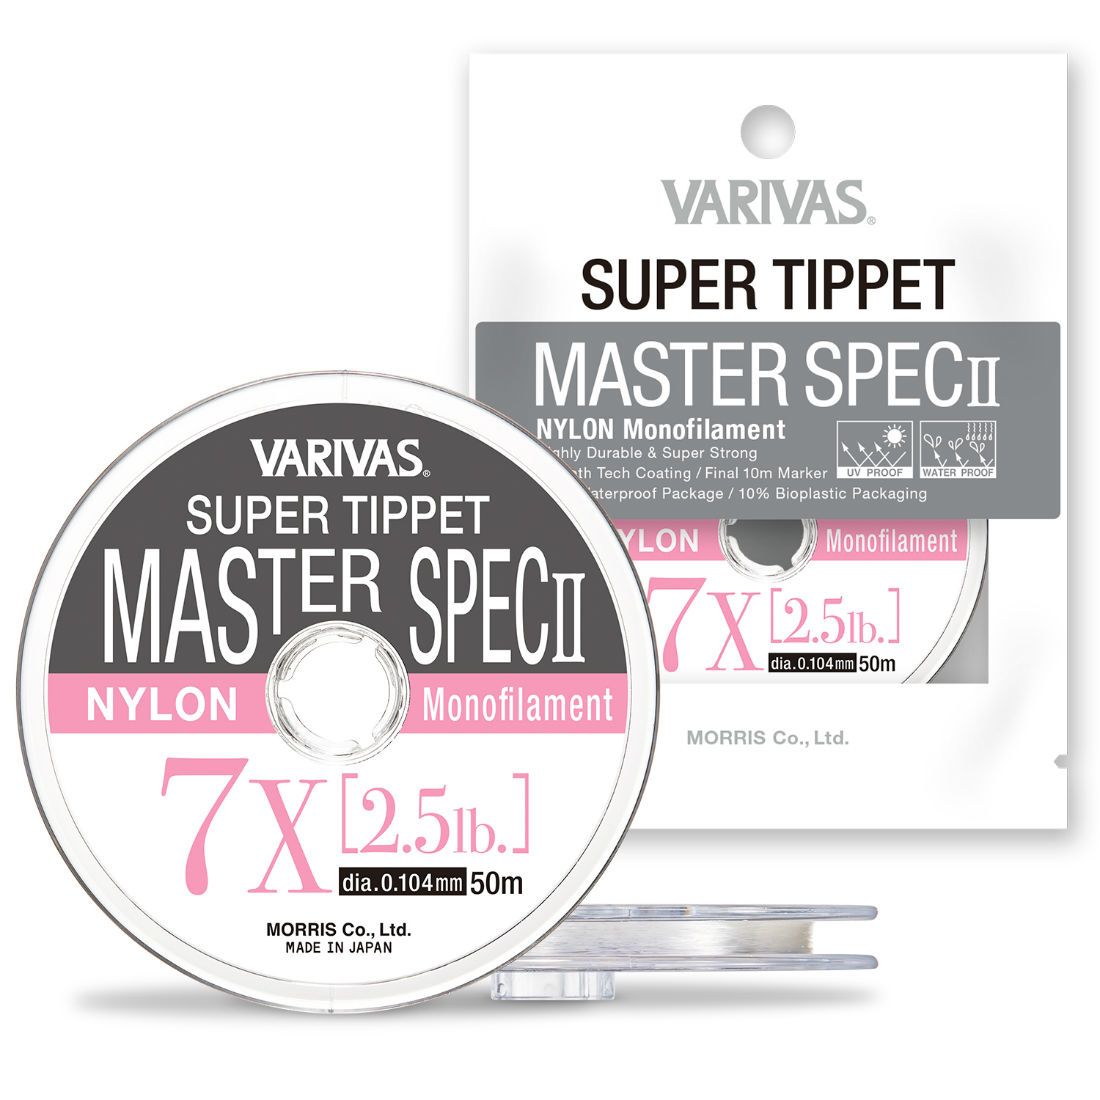 FIR SUPER TIPPET MASTER SPEC ll NYLON 5X 50m 0.148mm 4.7lb